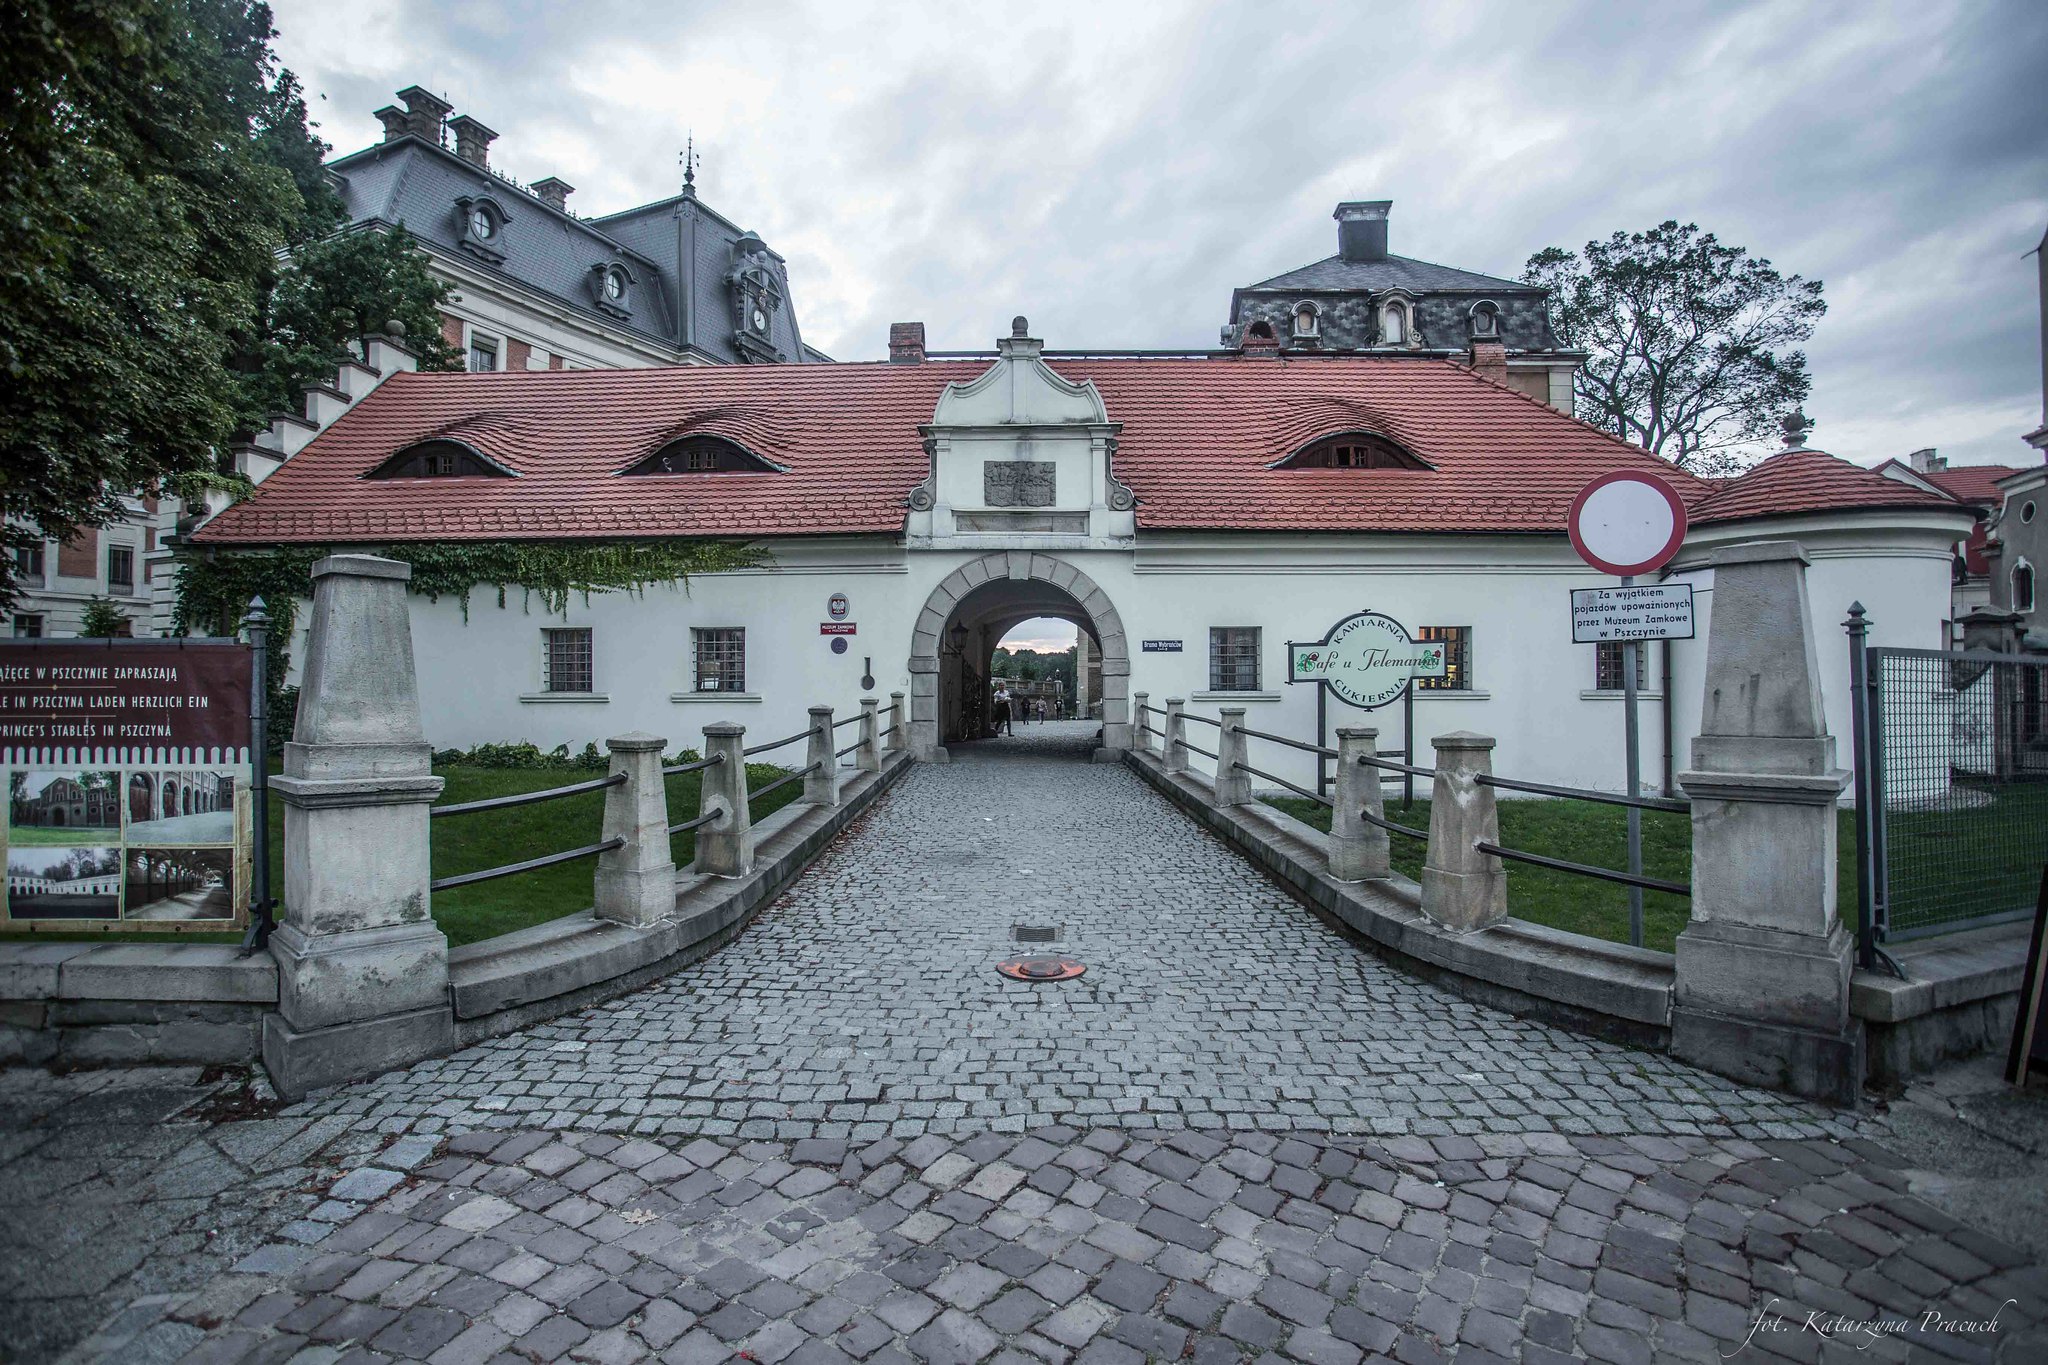 Muzeum Zamkowe w Pszczynie, perła Dolnego Śląska